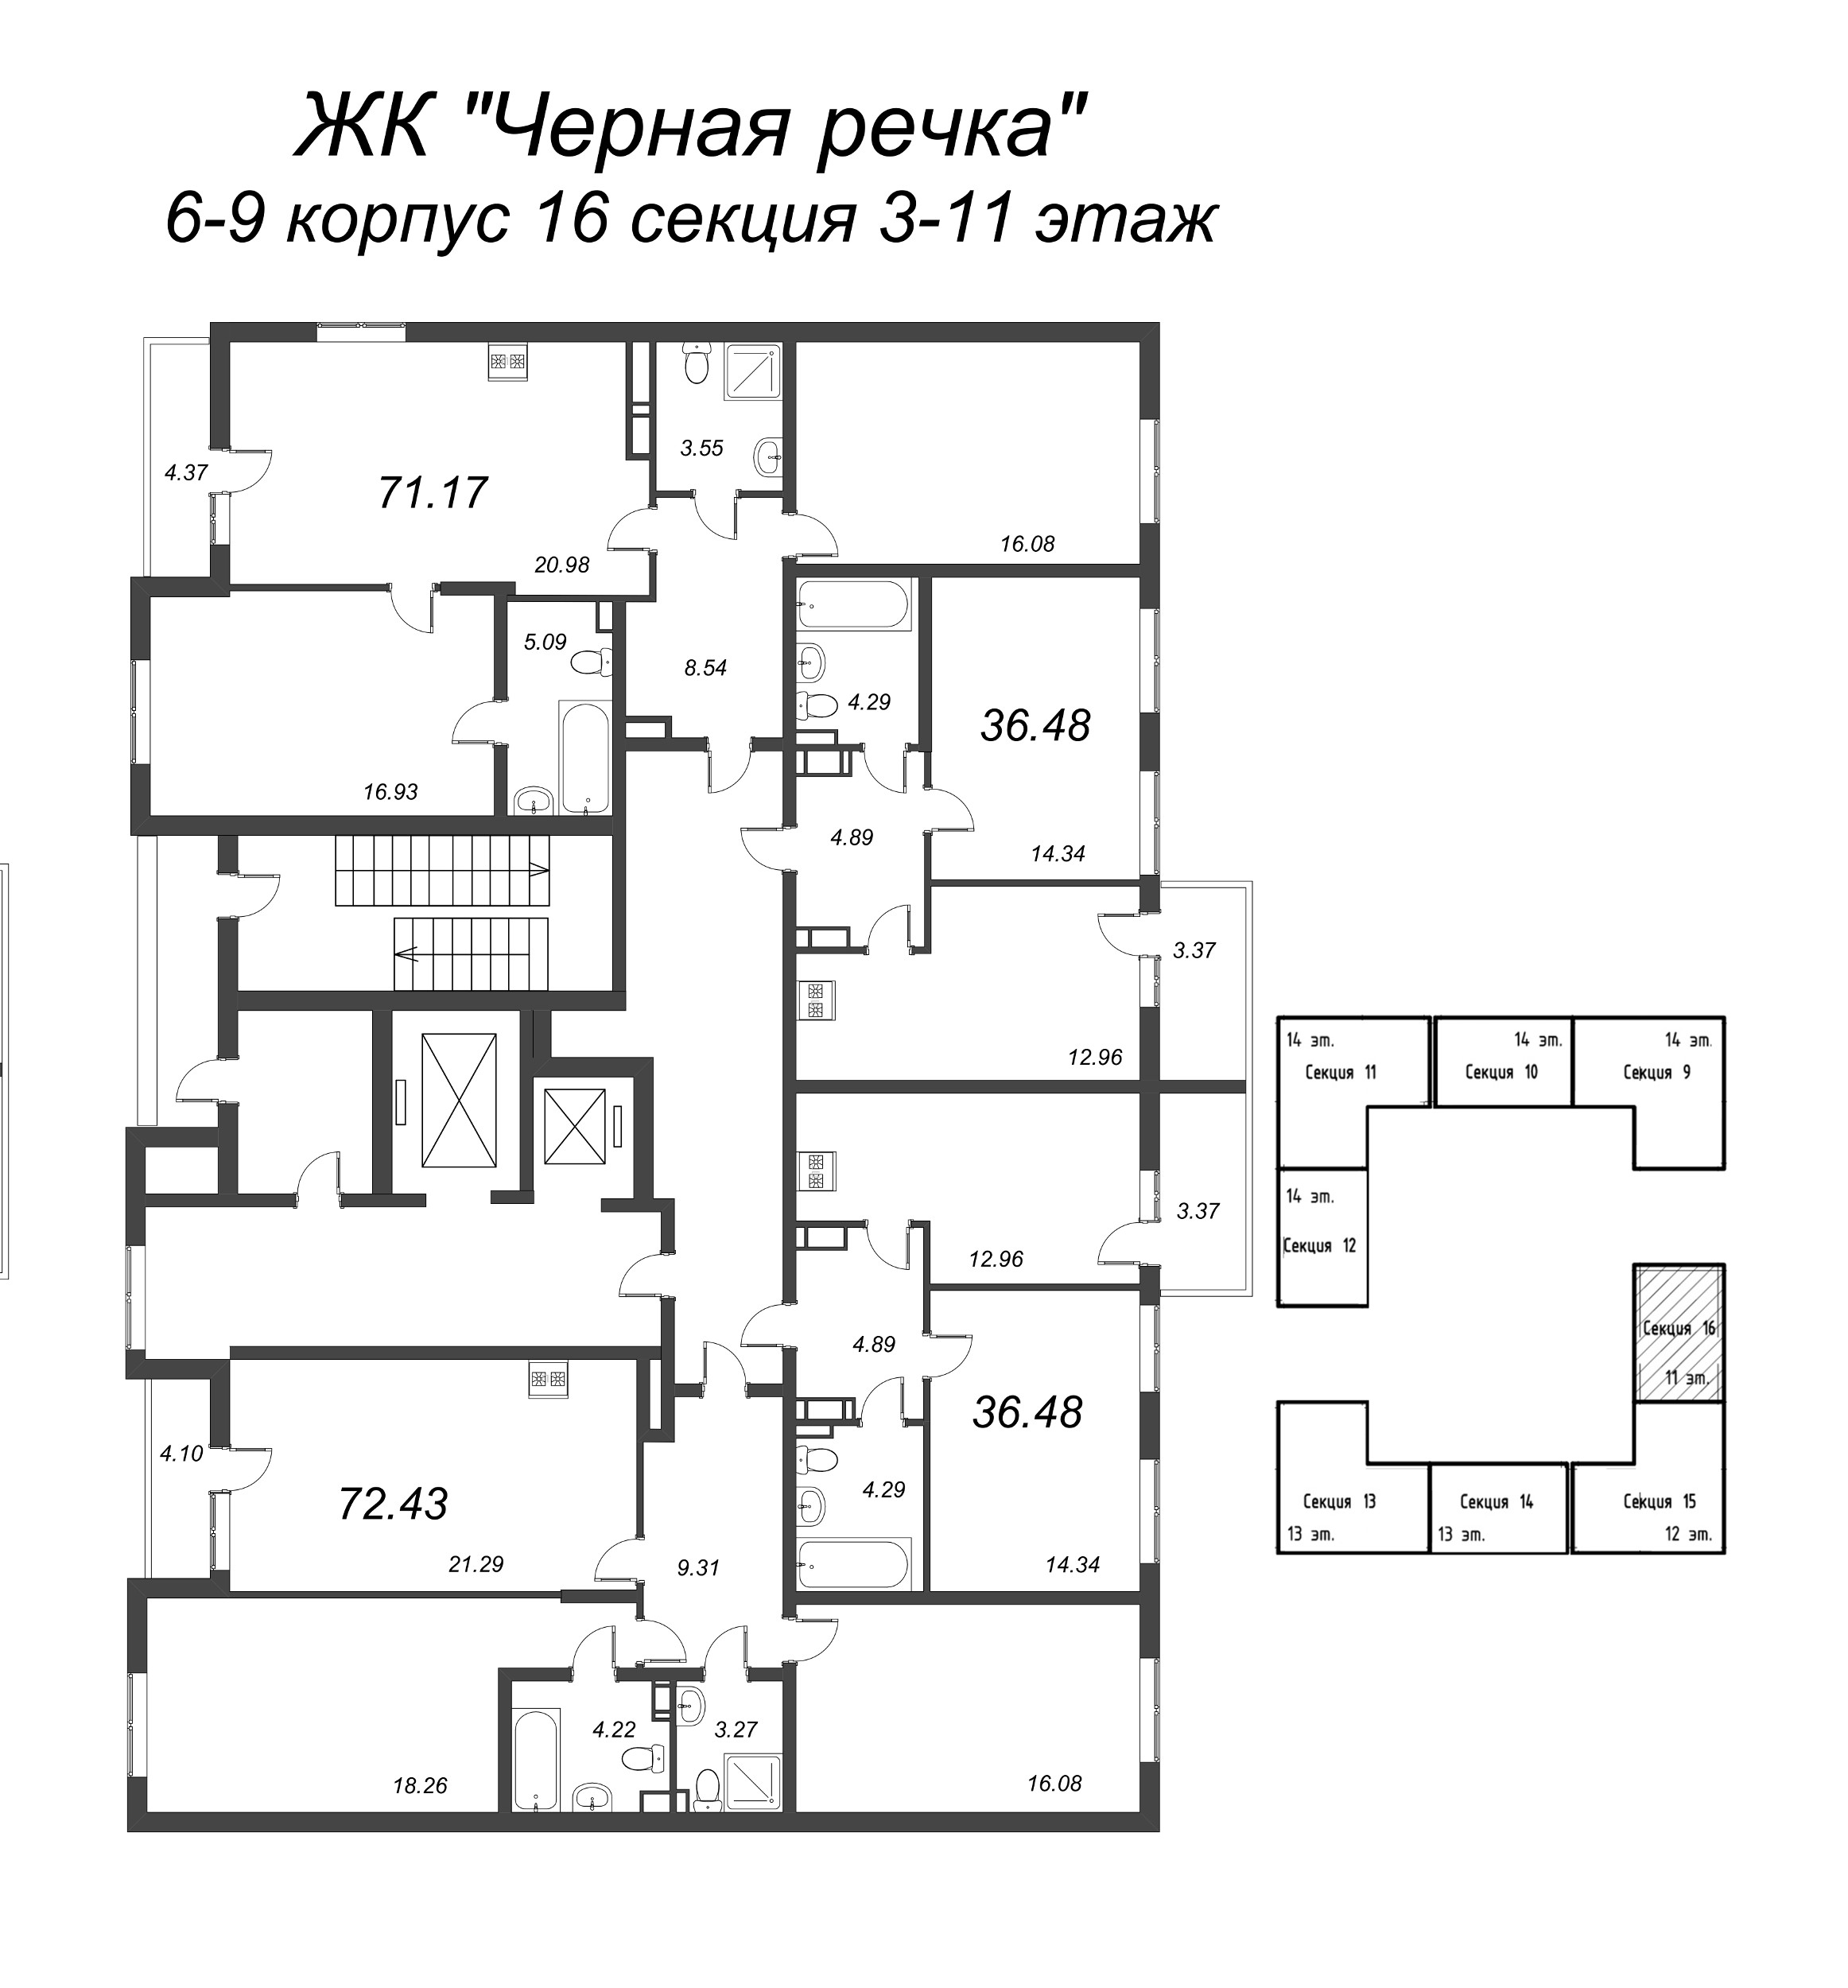 3-комнатная (Евро) квартира, 72.43 м² в ЖК "Чёрная речка" - планировка этажа